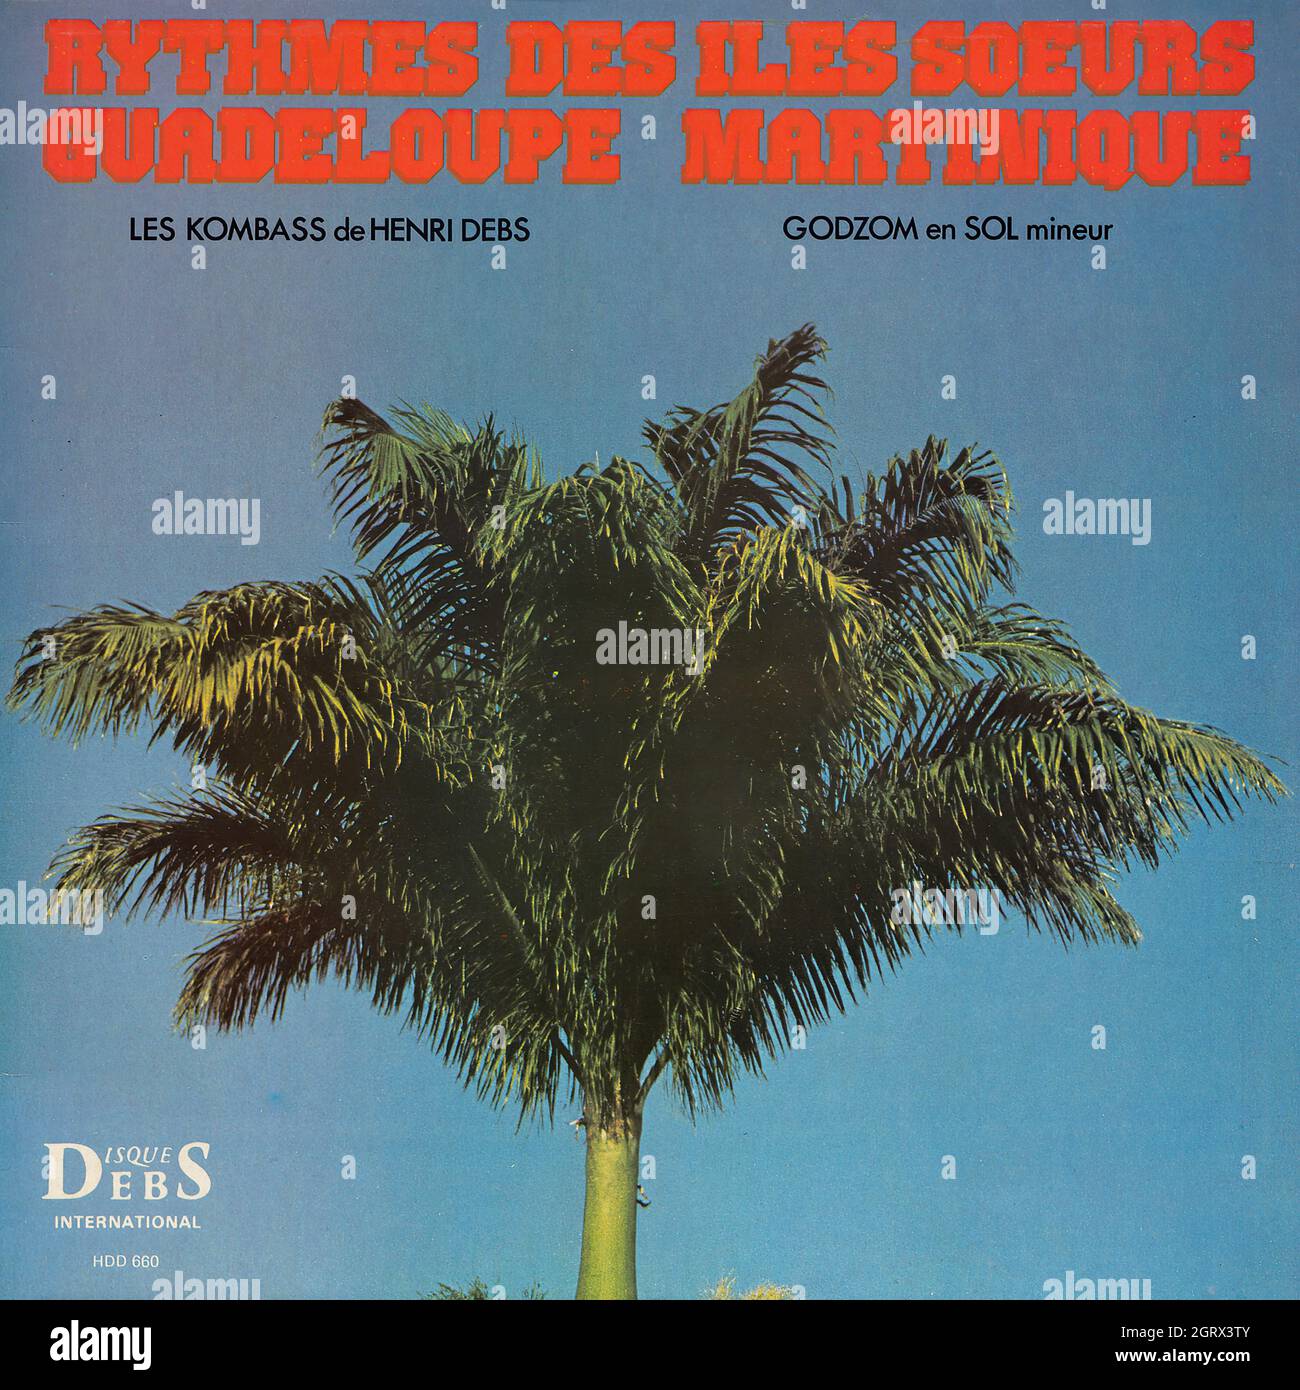 Les Kombass de Henri Debs - Godzom en Sol Mineur - Rythmes des îles soeurs, Guadeloupe Martinique - Vintage Vinyl Record Cover Stock Photo